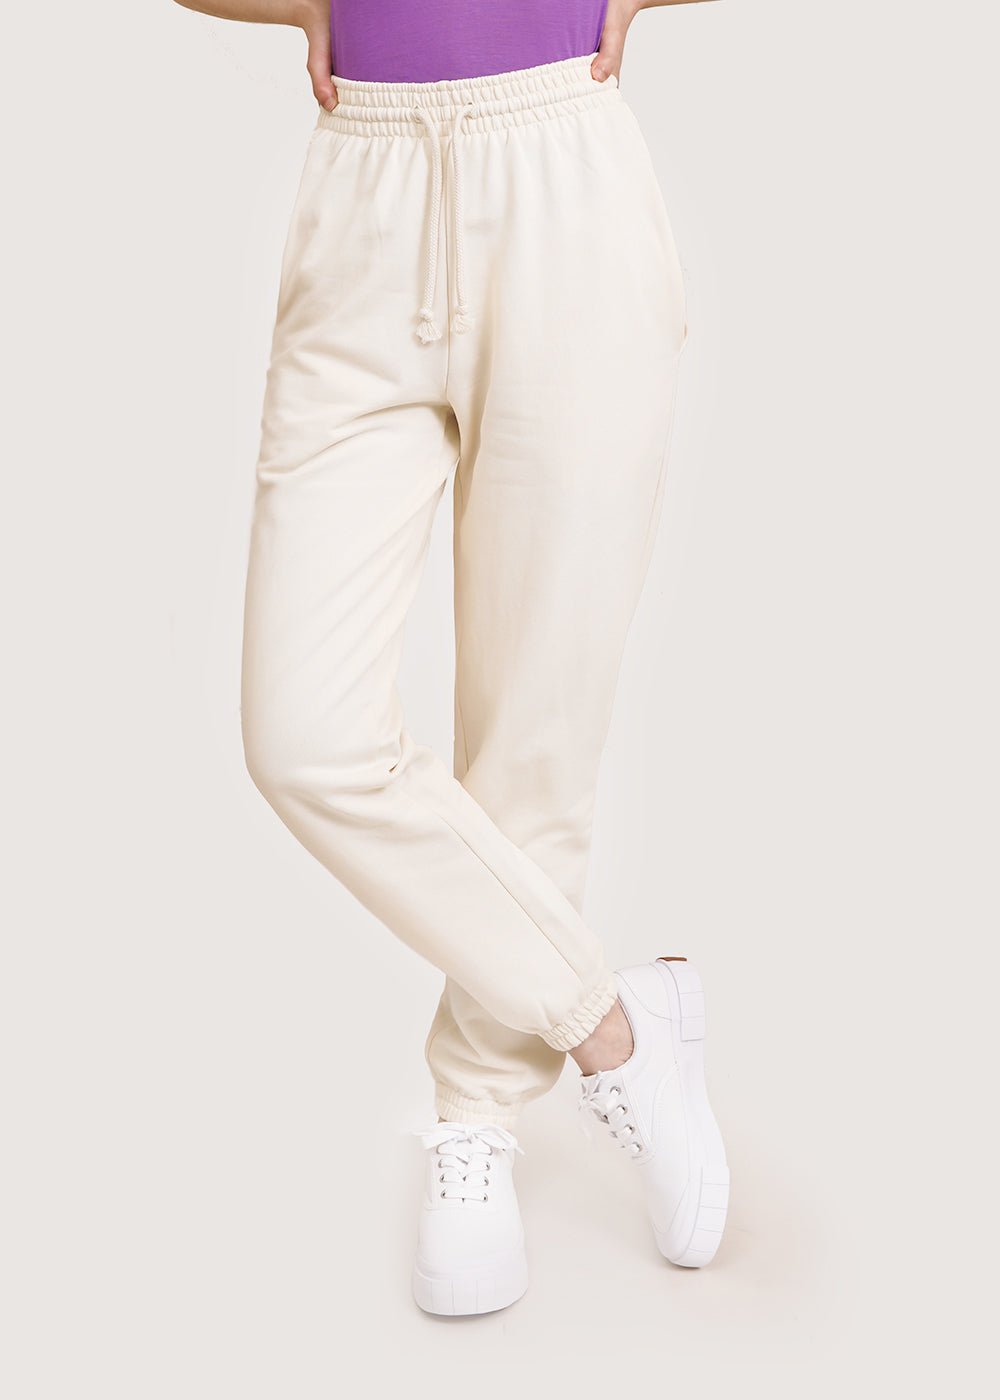 Baserange Off-White Sweat Pants - New Classics Studios Sustainable Ethical Fashion Canada